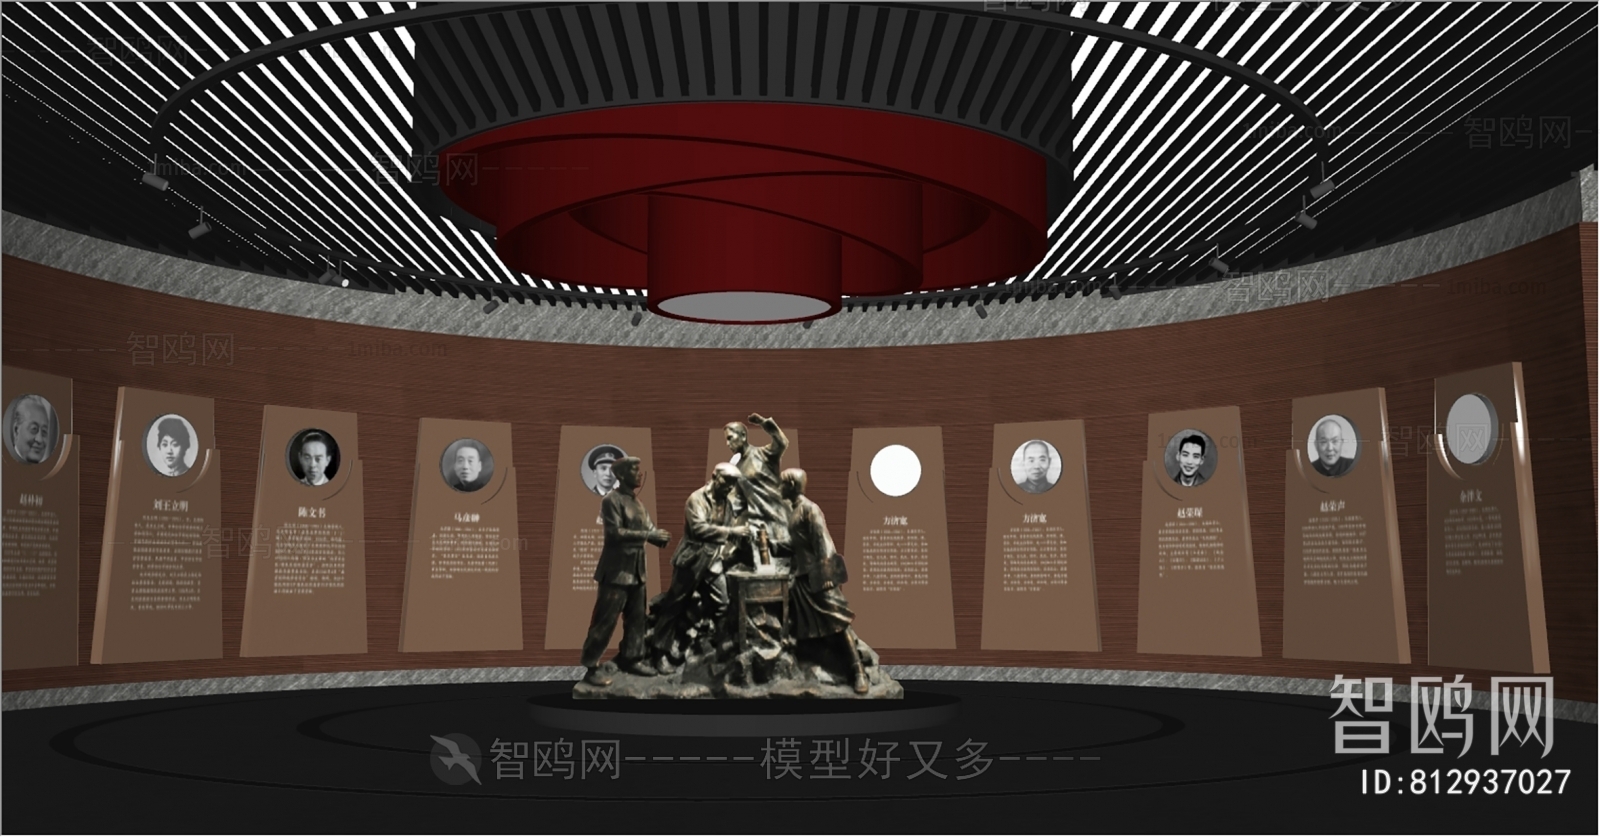 现代党建展厅 革命雕塑